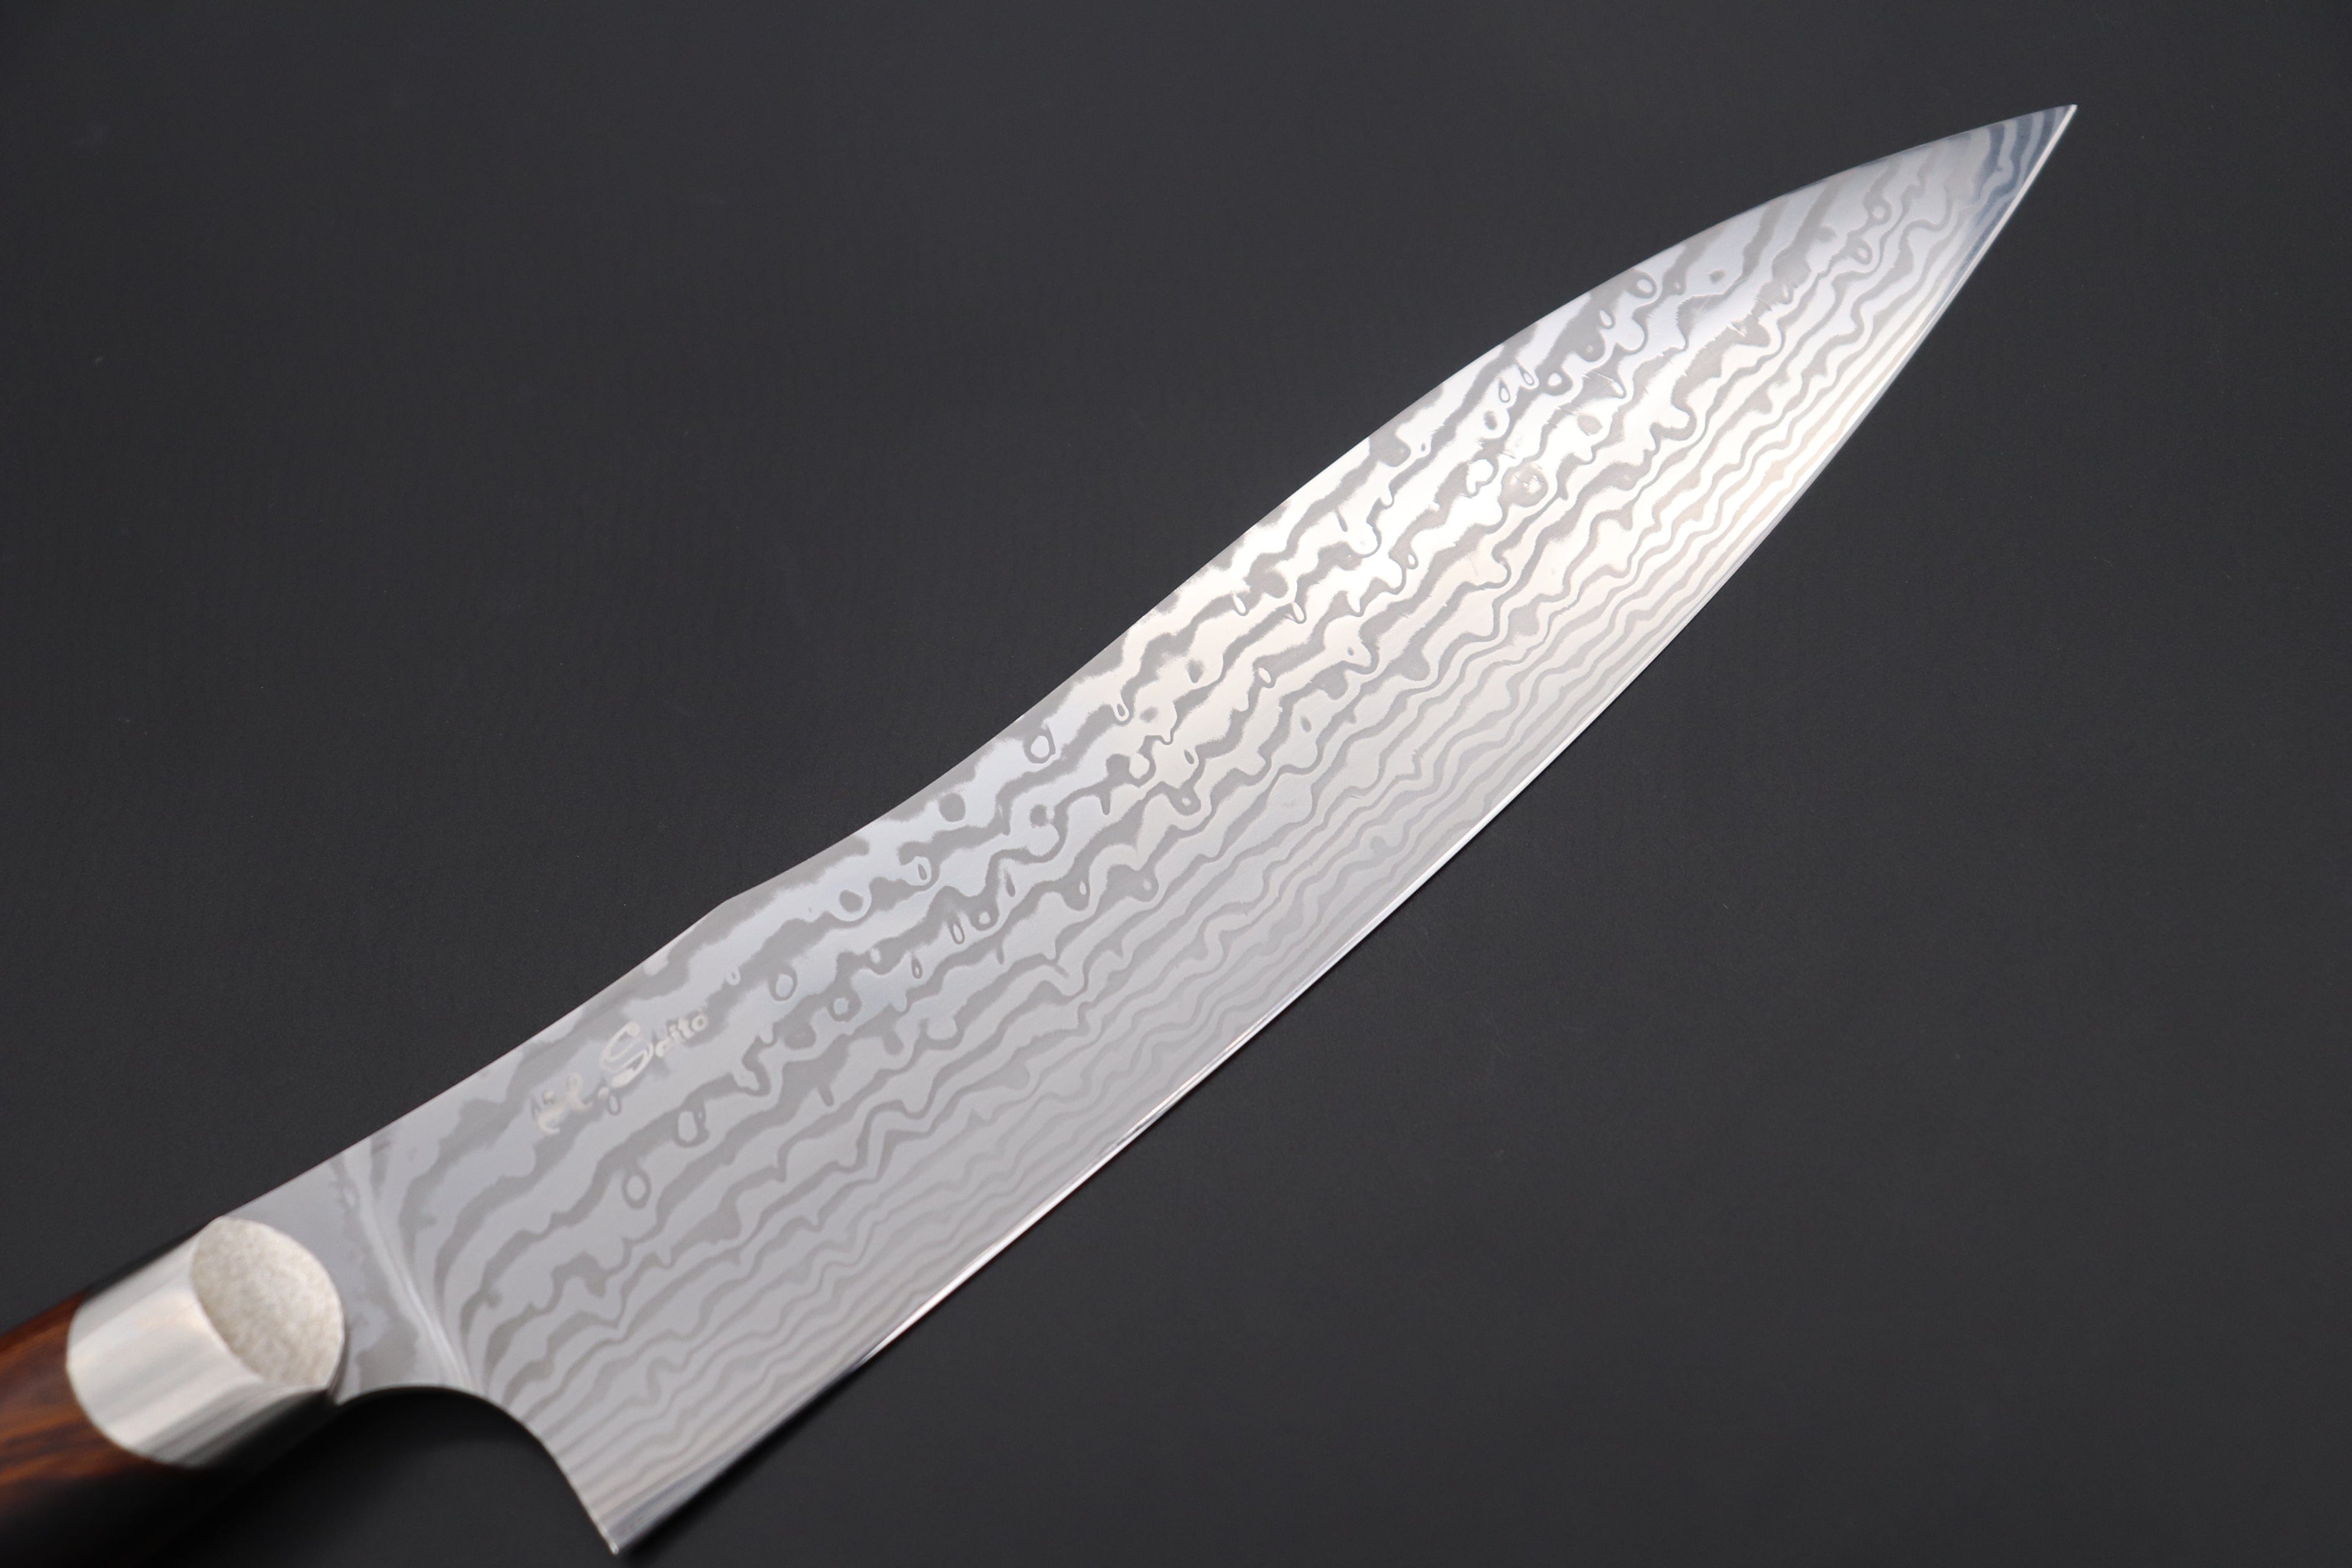 https://japanesechefsknife.com/cdn/shop/files/others-gyuto-custom-knife-maker-saito-hiroshi-custom-core-less-damascus-gyuto-190mm-7-4-inch-desert-ironwood-handle-sh-6-43309846888731.jpg?v=1698296617